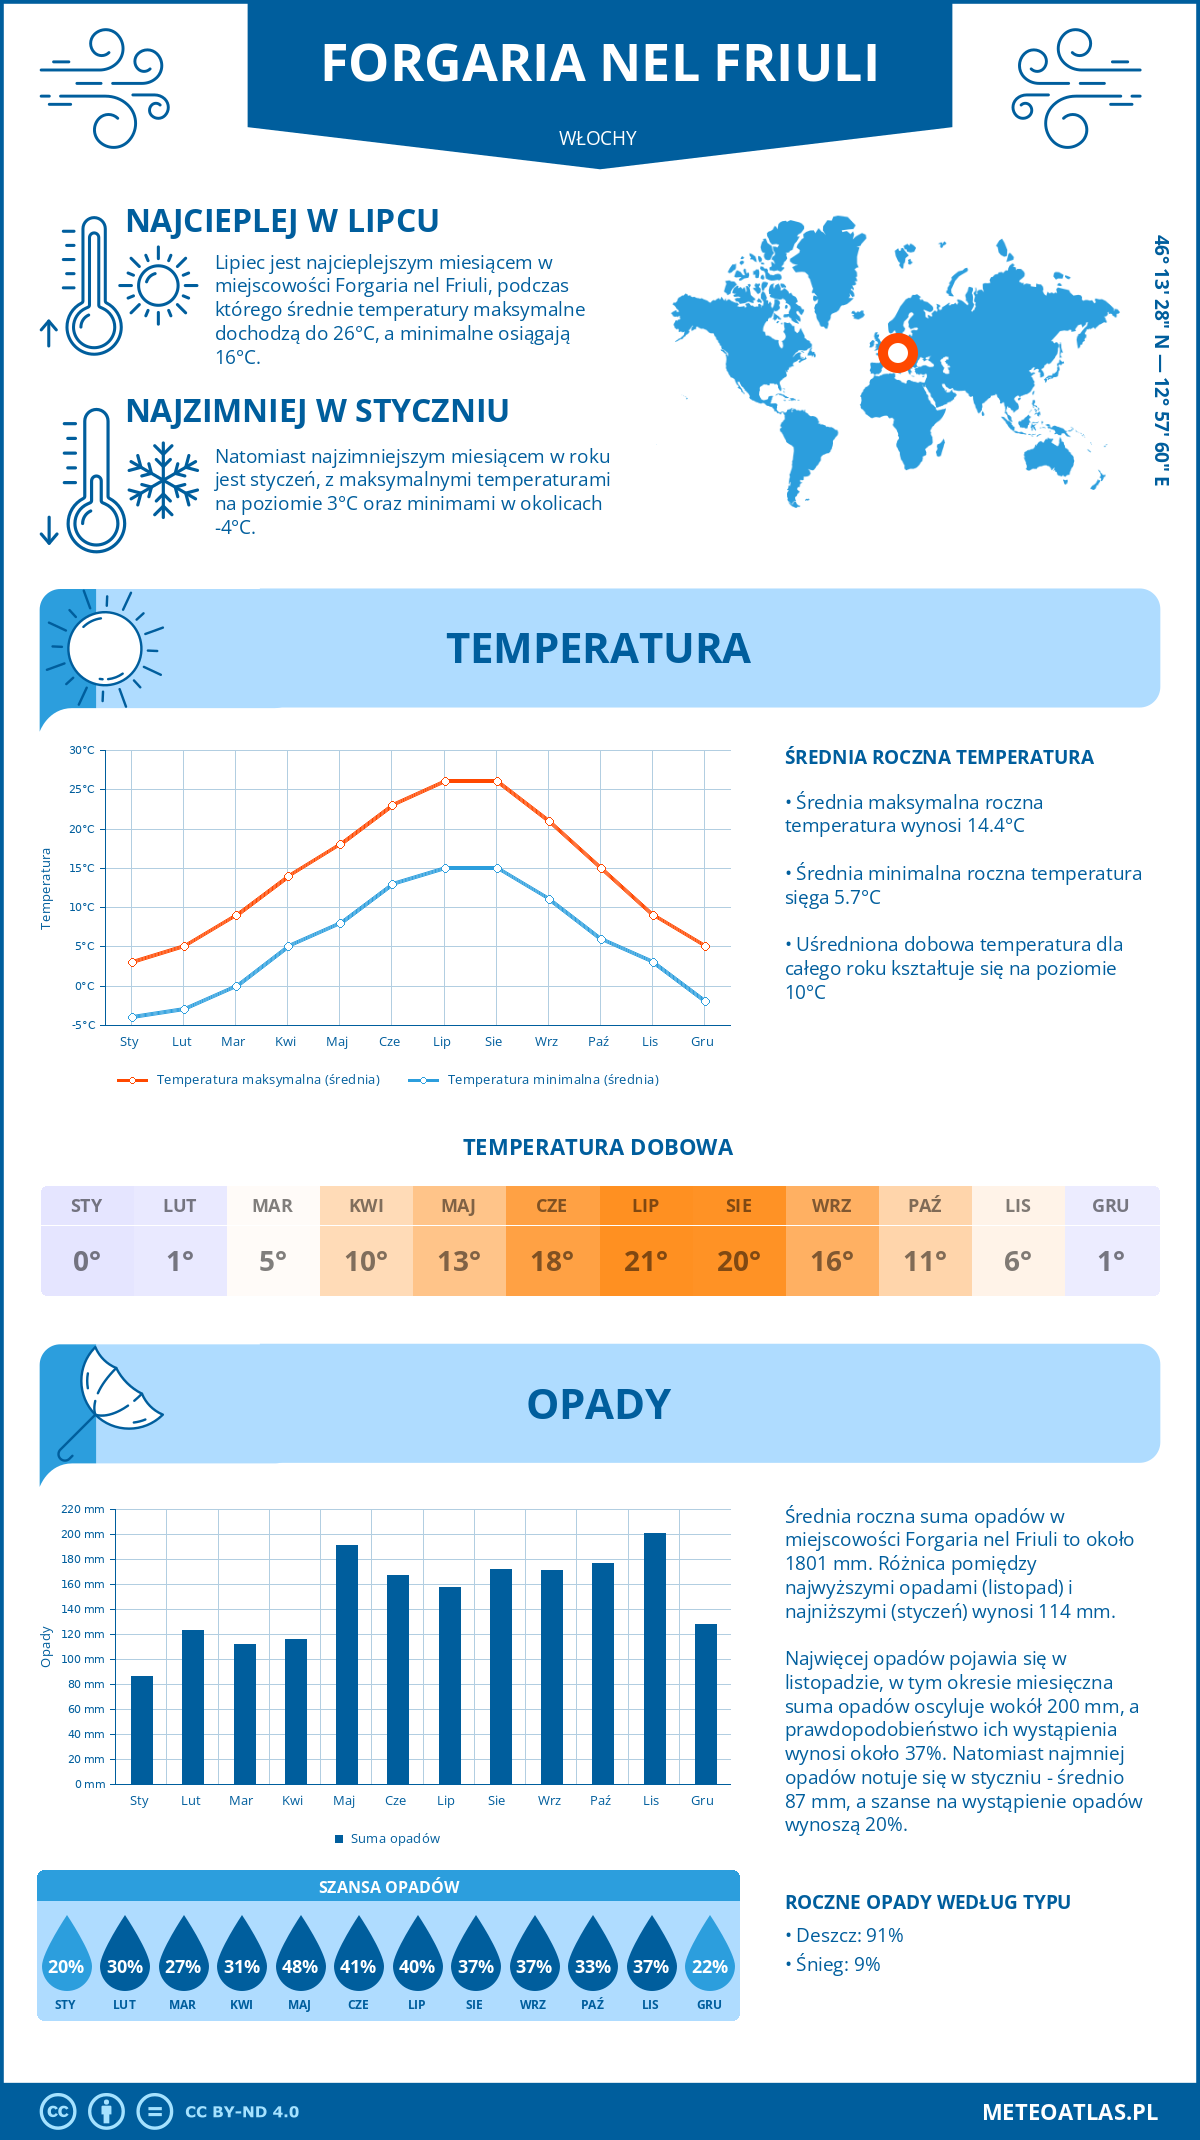 Pogoda Forgaria nel Friuli (Włochy). Temperatura oraz opady.